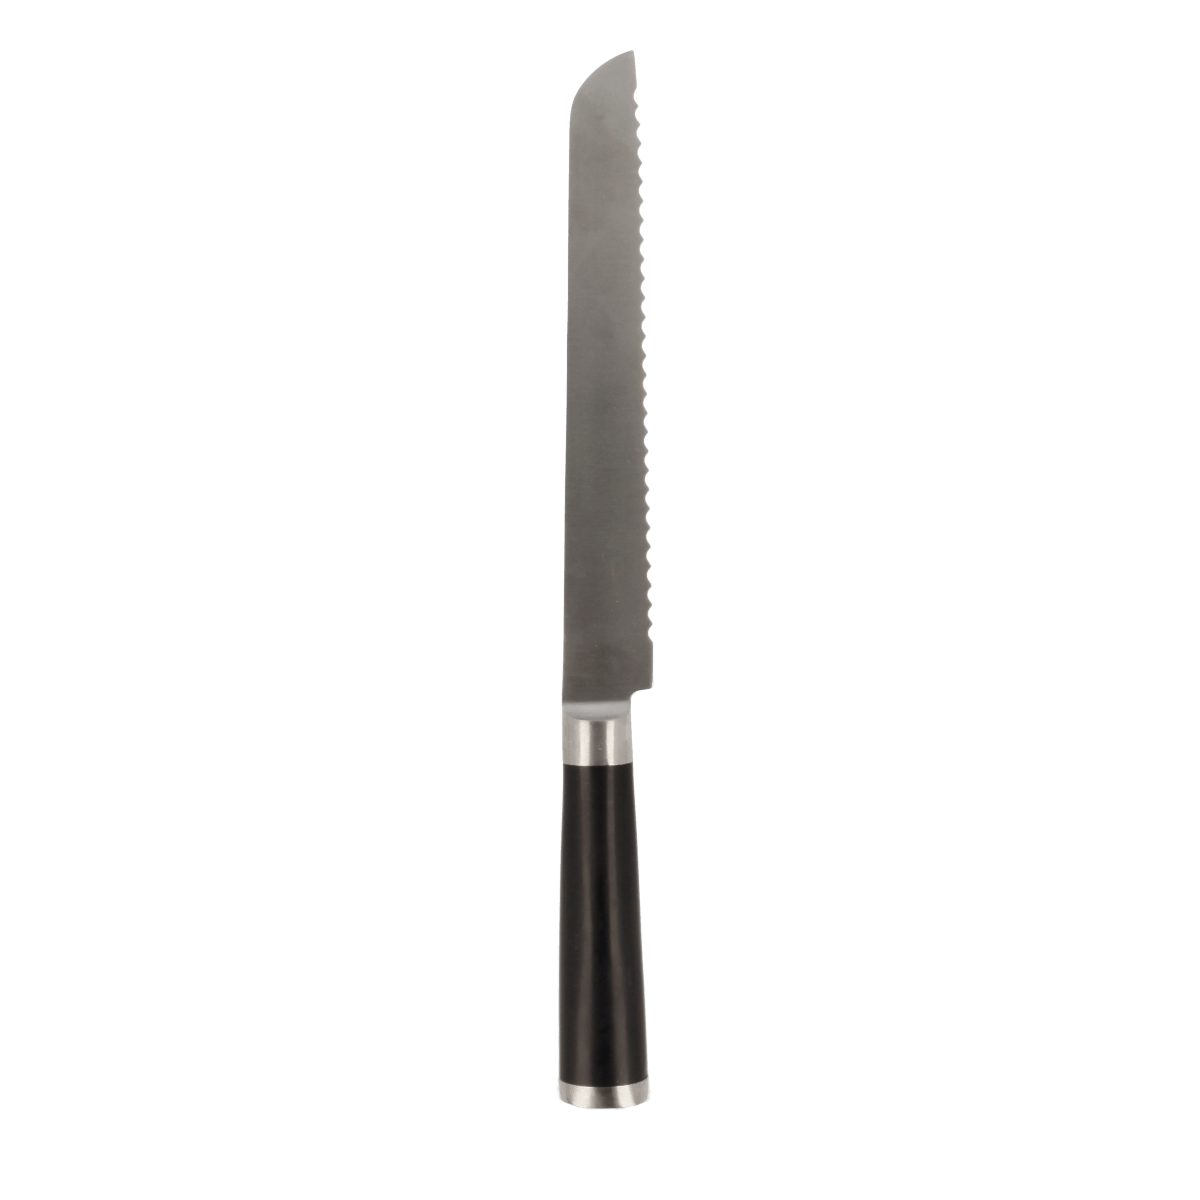 EUROHOME Brotmesser Scharfes Messer mit rutschfestem Kunststoffgriff - Rostfrei Edelstahl, Brotmesser mit Wellenschliff - Küchenmesser